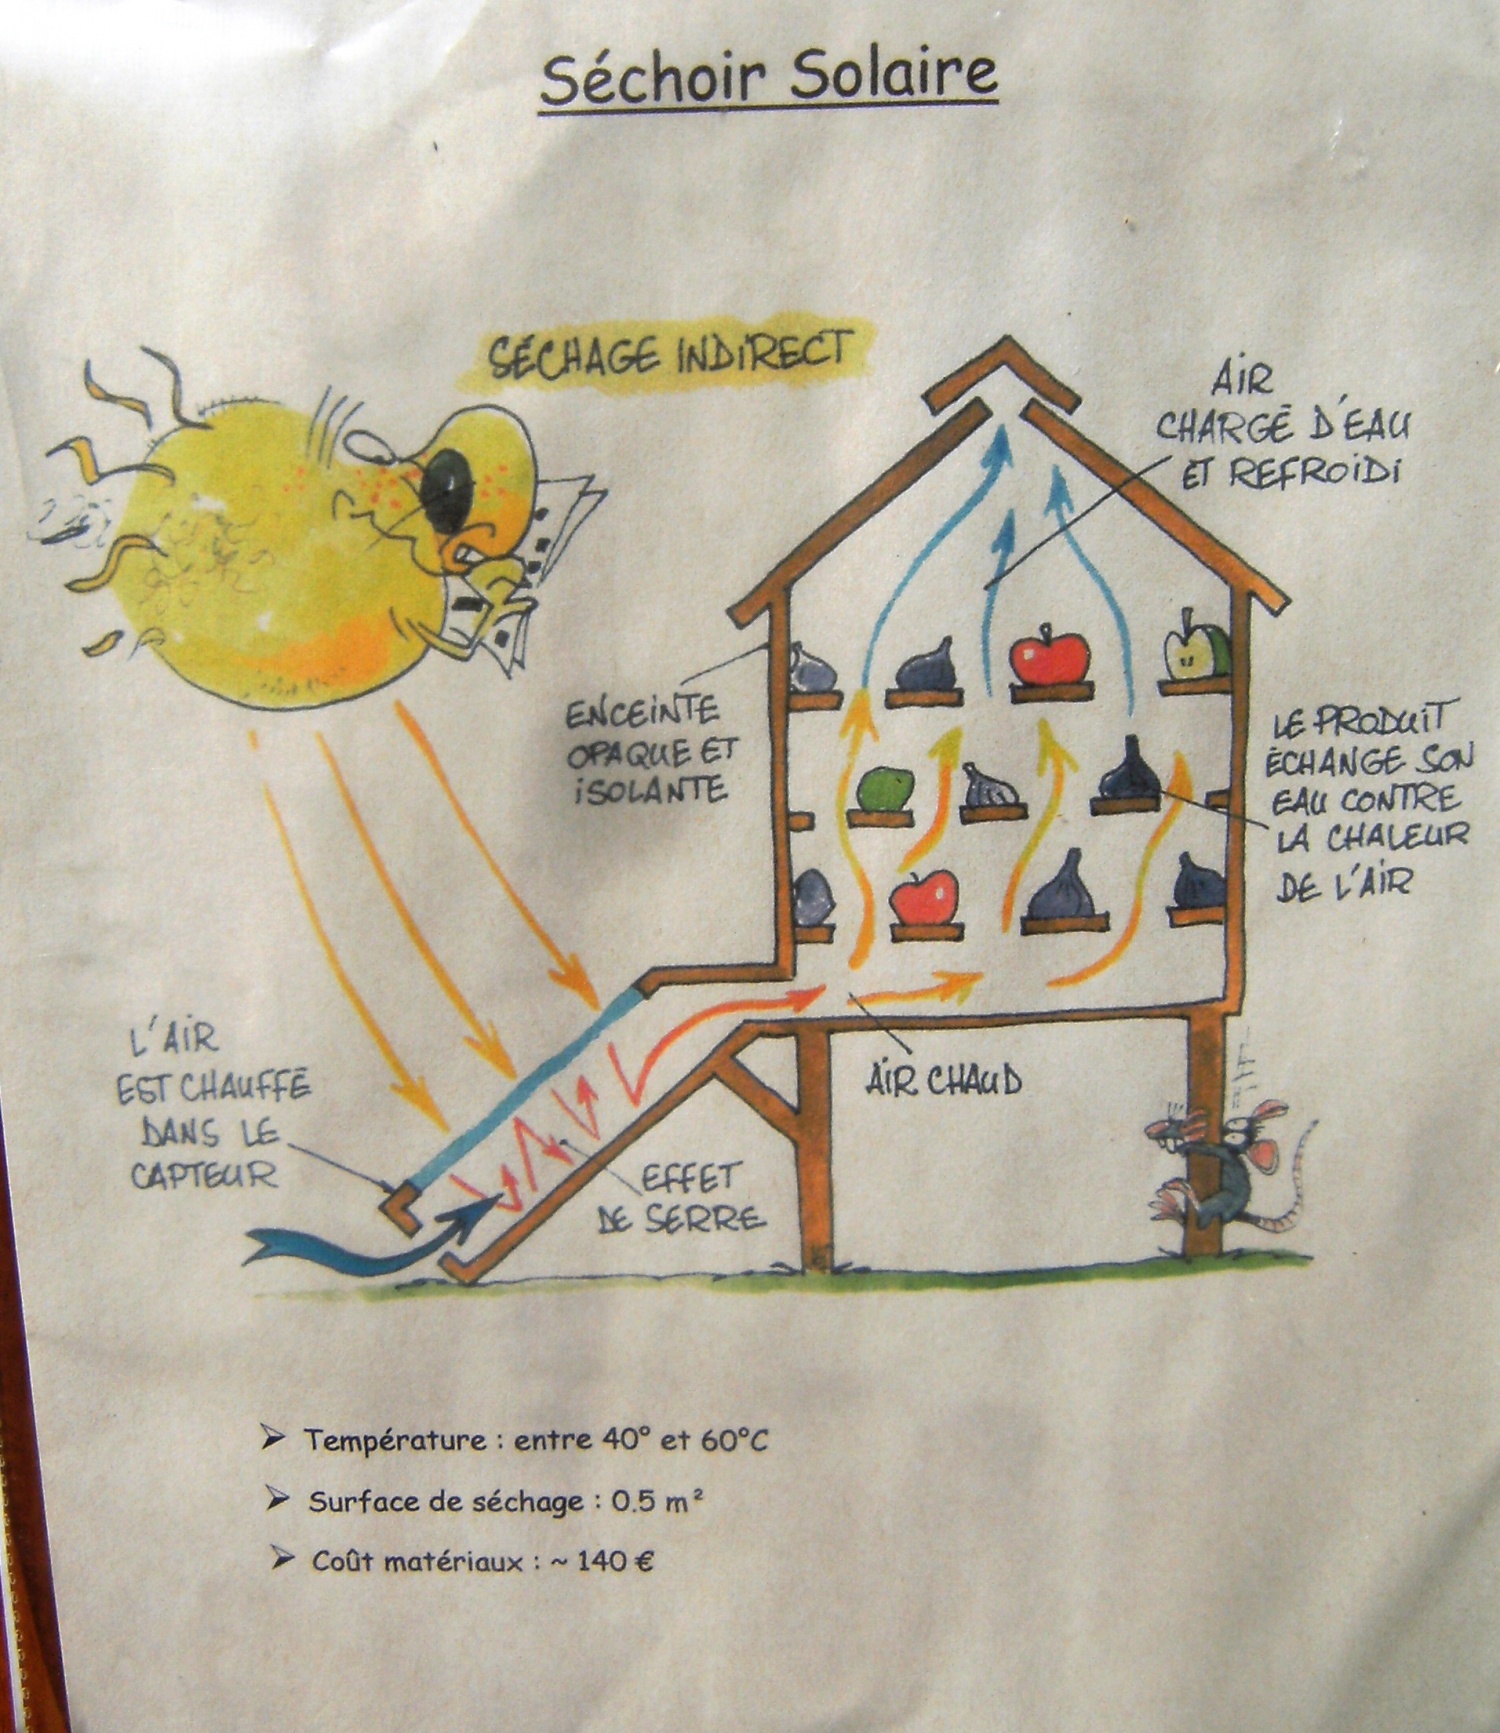 Four et séchoir solaire - Jardins en partage